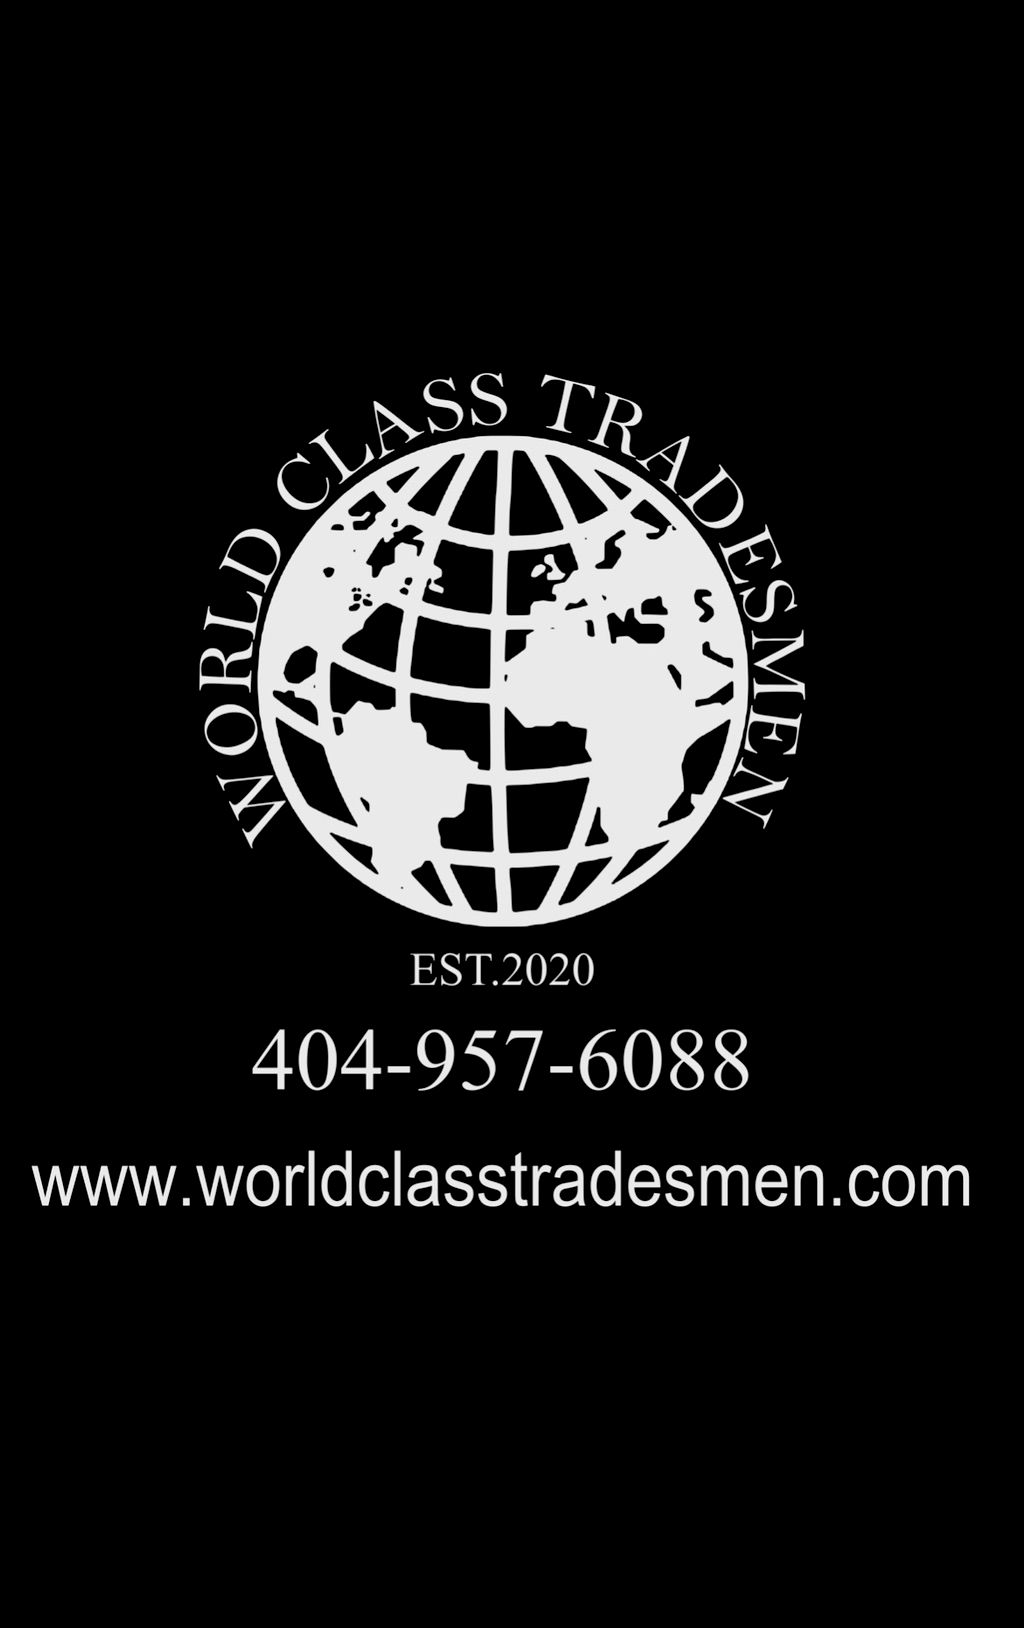 World Class Tradesmen